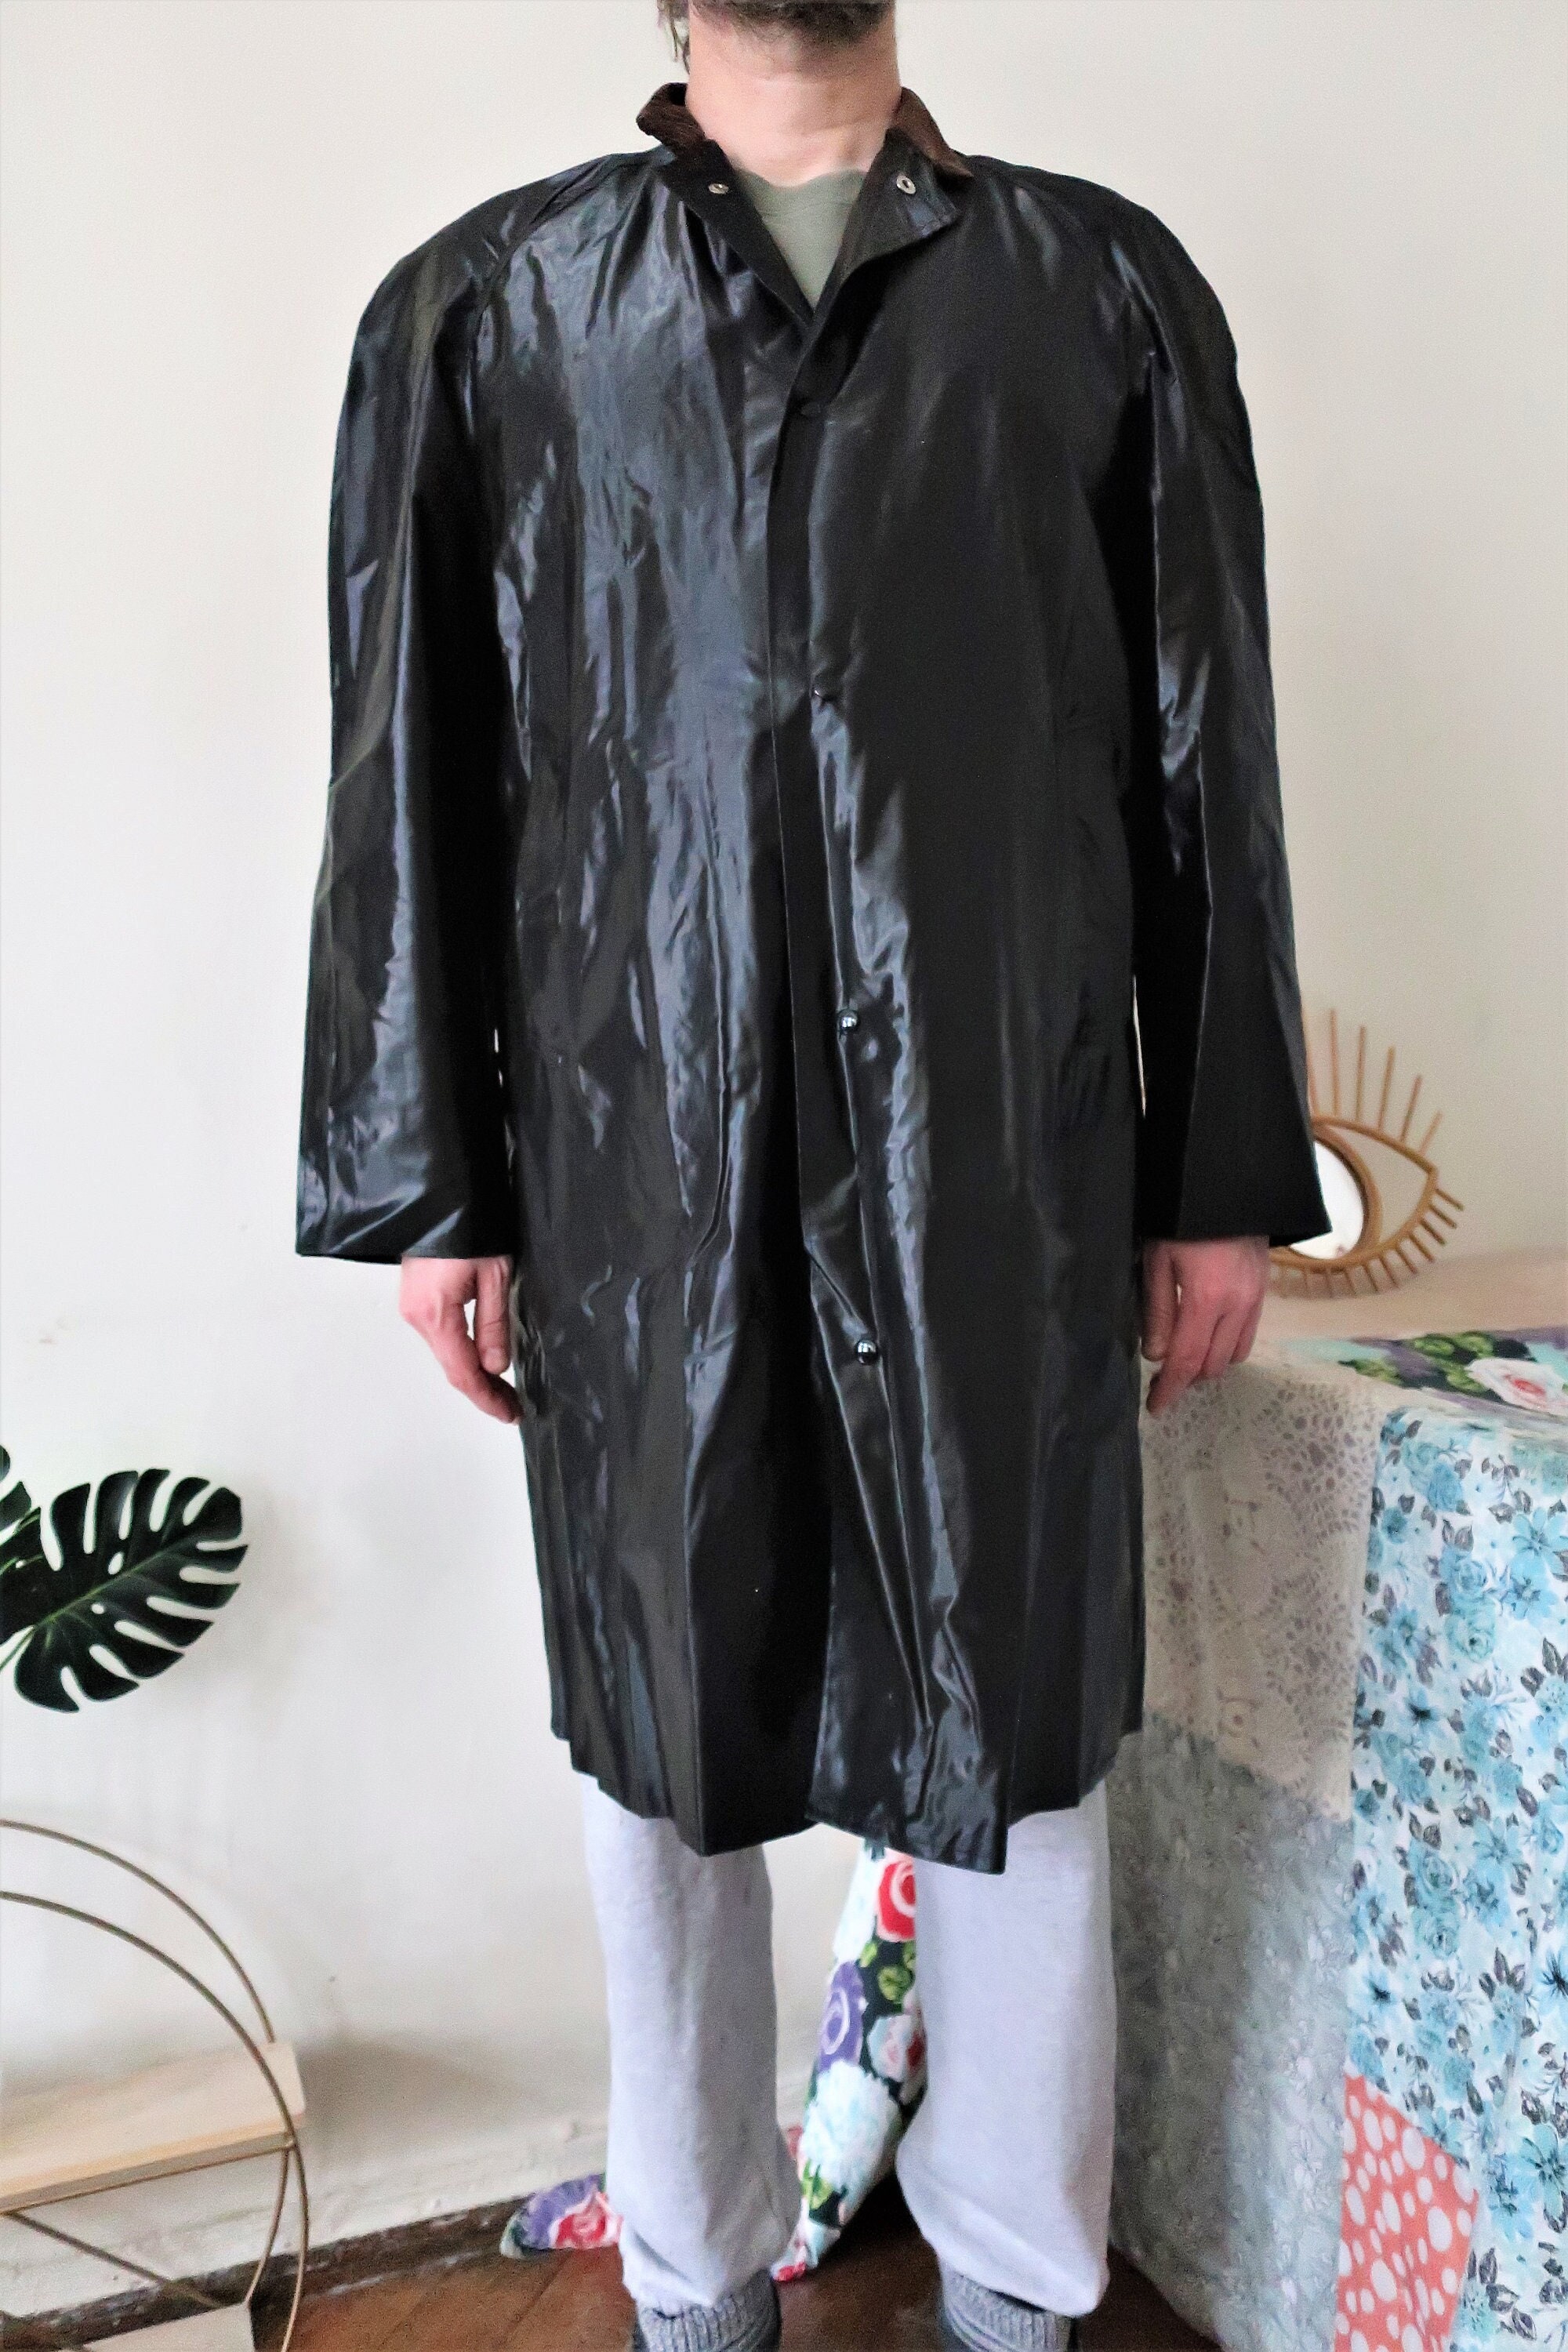 Vintage Shiny Black Pvc-coated Cotton Rain Coat With Corduroy | Etsy